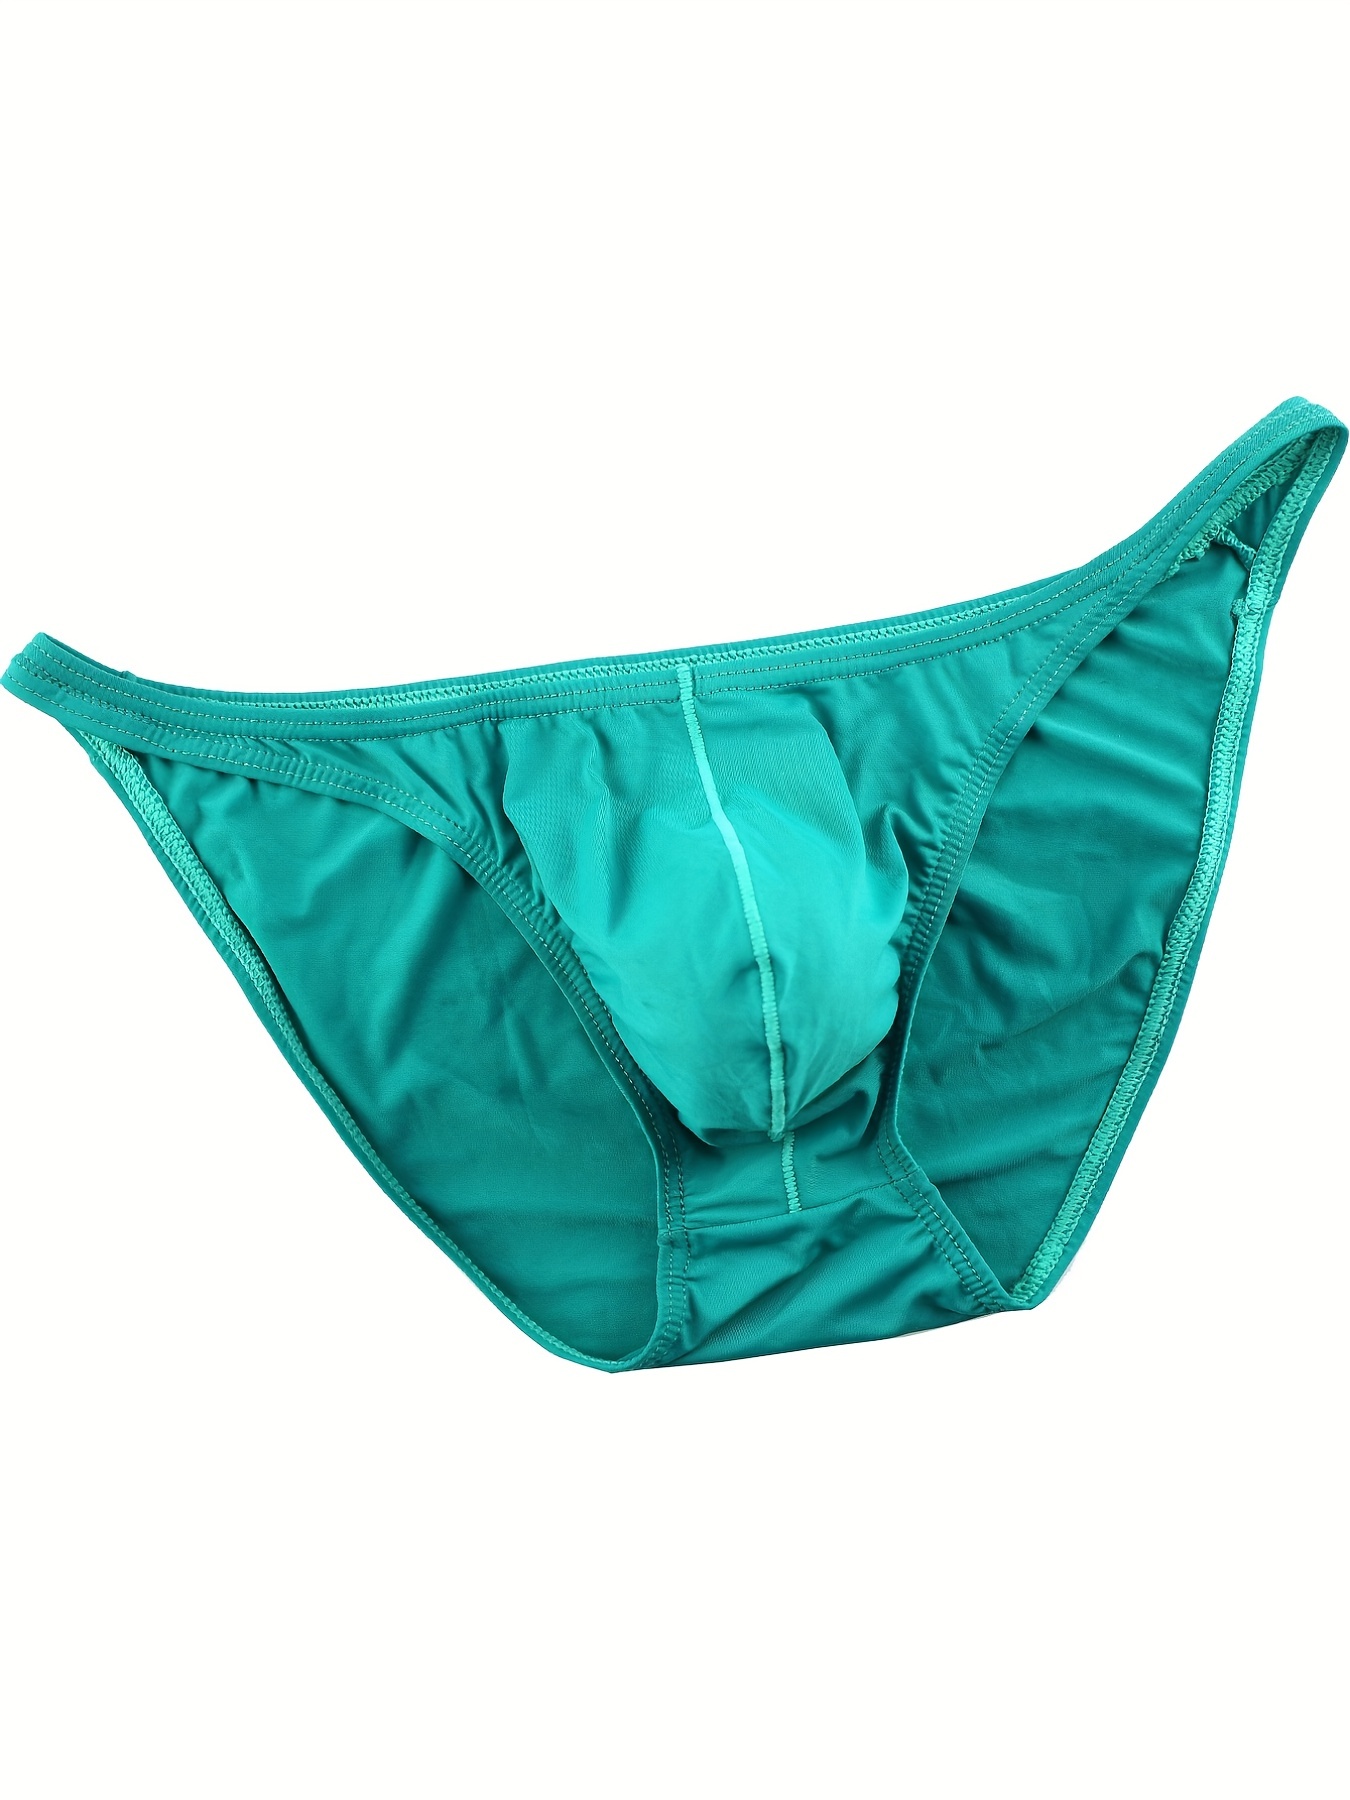 Buy LAK 18 Men's Ice Silk Lycra Cotton Breathable Underwear Brief